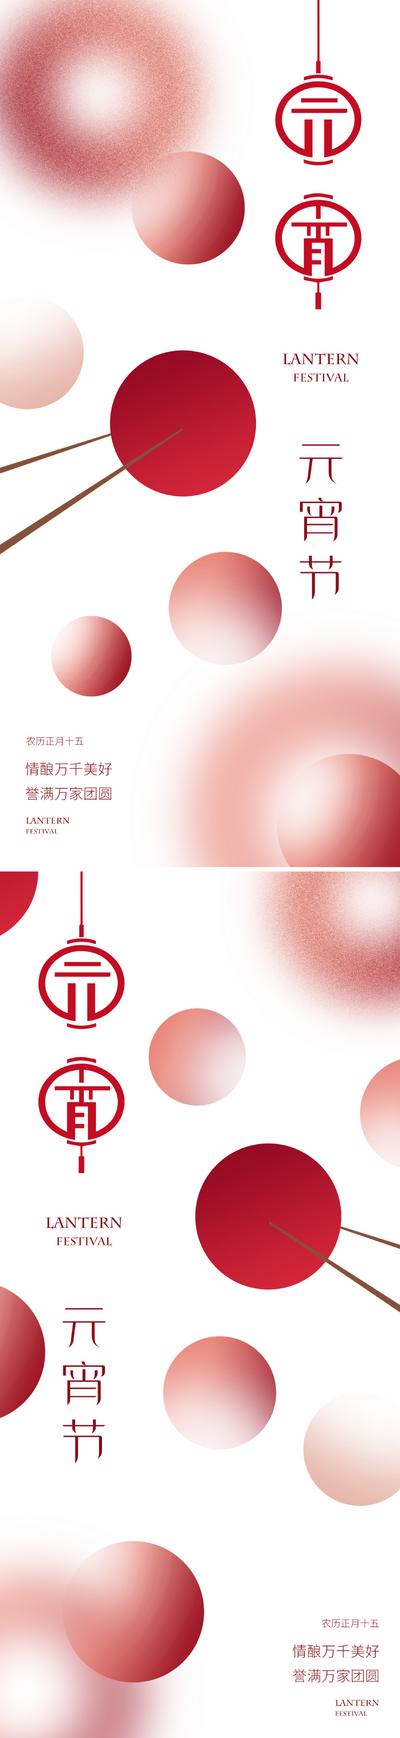 南门网 广告 海报 质感 元宵 节日 创意 现代 简约 元宵节 美业 汤圆 团圆 设计感 简洁 大气 高级 弥散 朦胧 红色